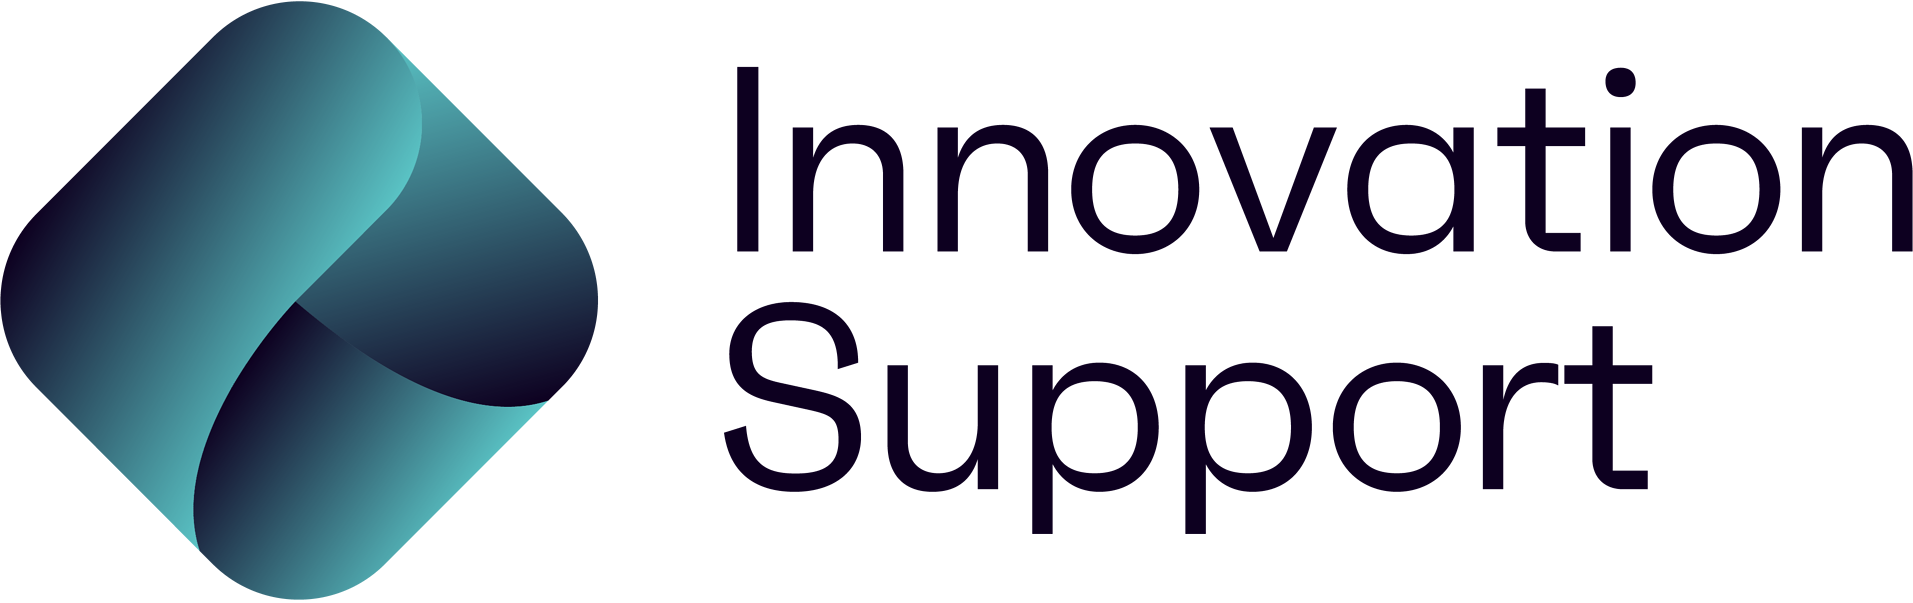 Innovation support